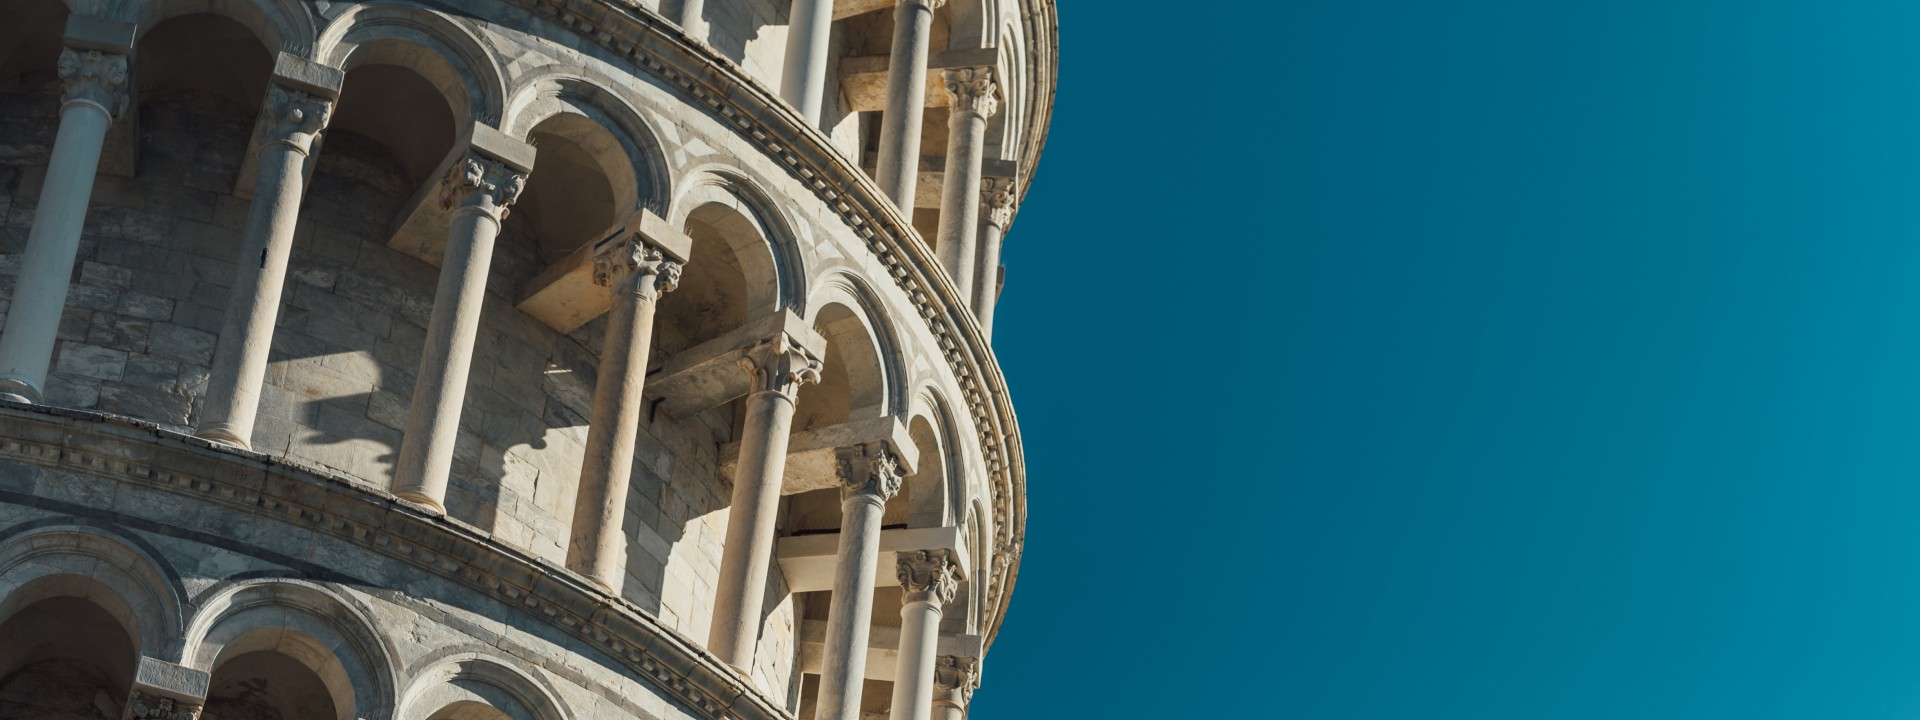 Bild vom Schiefen Turm von Pisa (Torre pendente di Pisa)